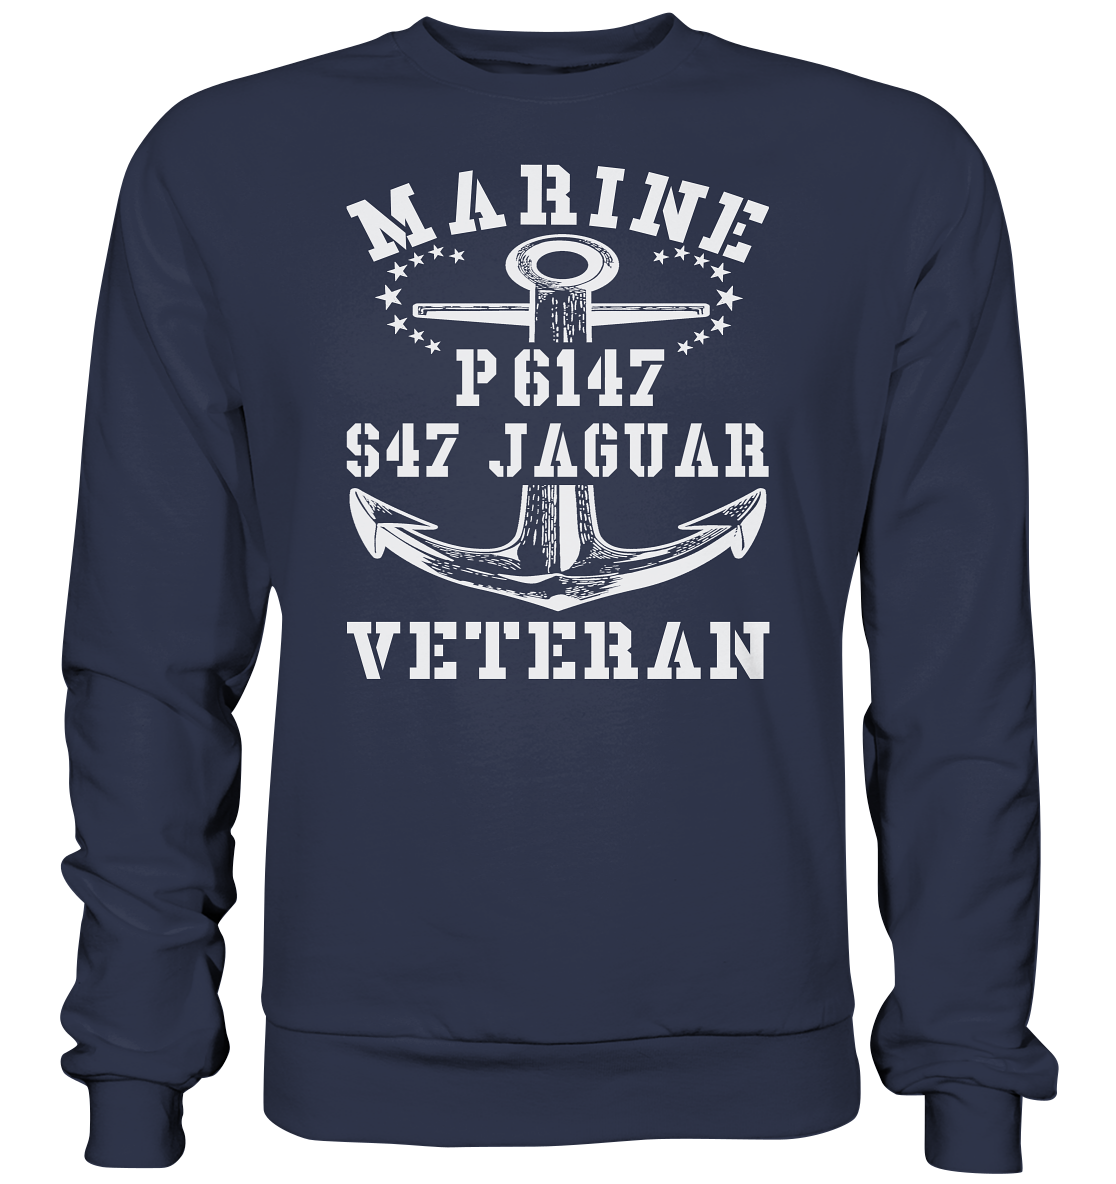 P6147 S47 JAGUAR Marine Veteran - Premium Sweatshirt